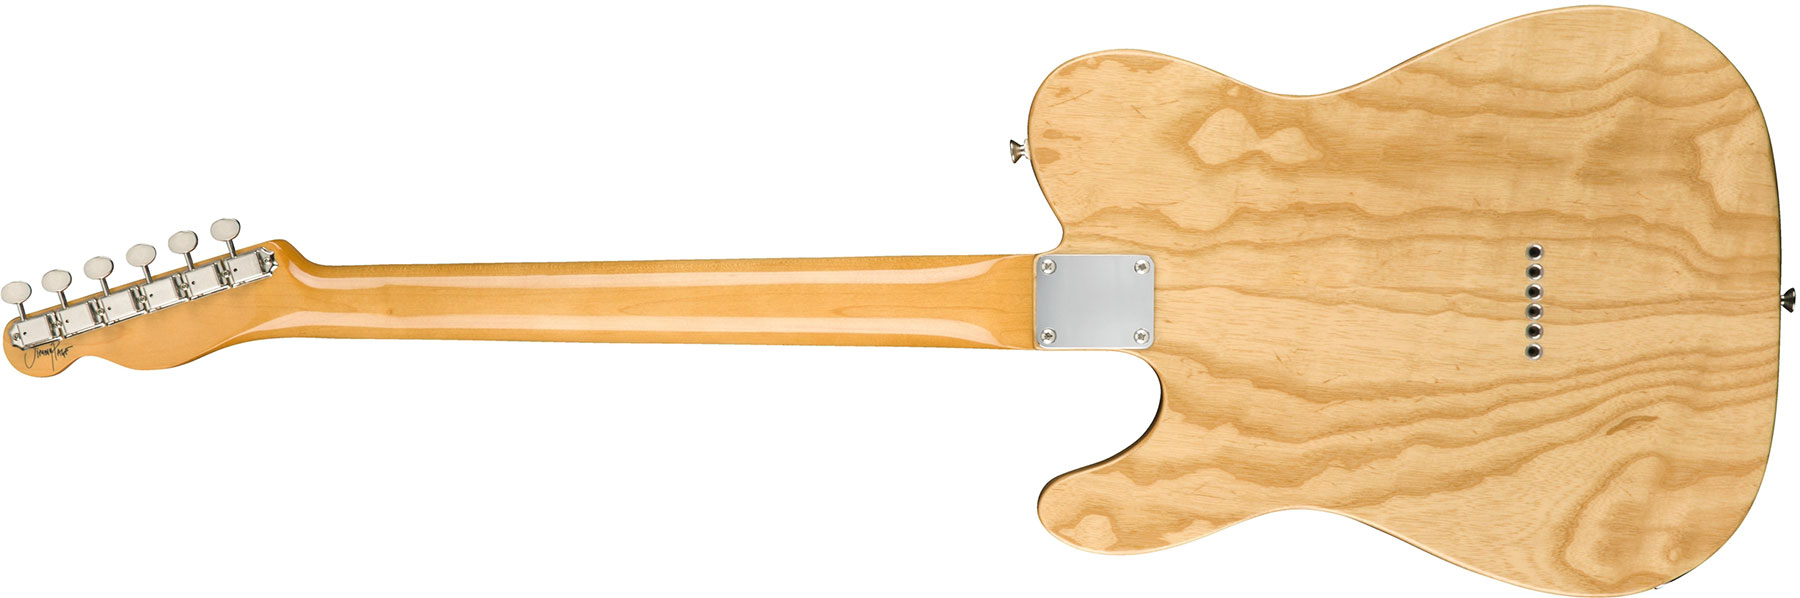 Fender Jimmy Page Tele Dragon Ltd Mex Signature Rw - Natural - Guitare Électrique Forme Tel - Variation 1